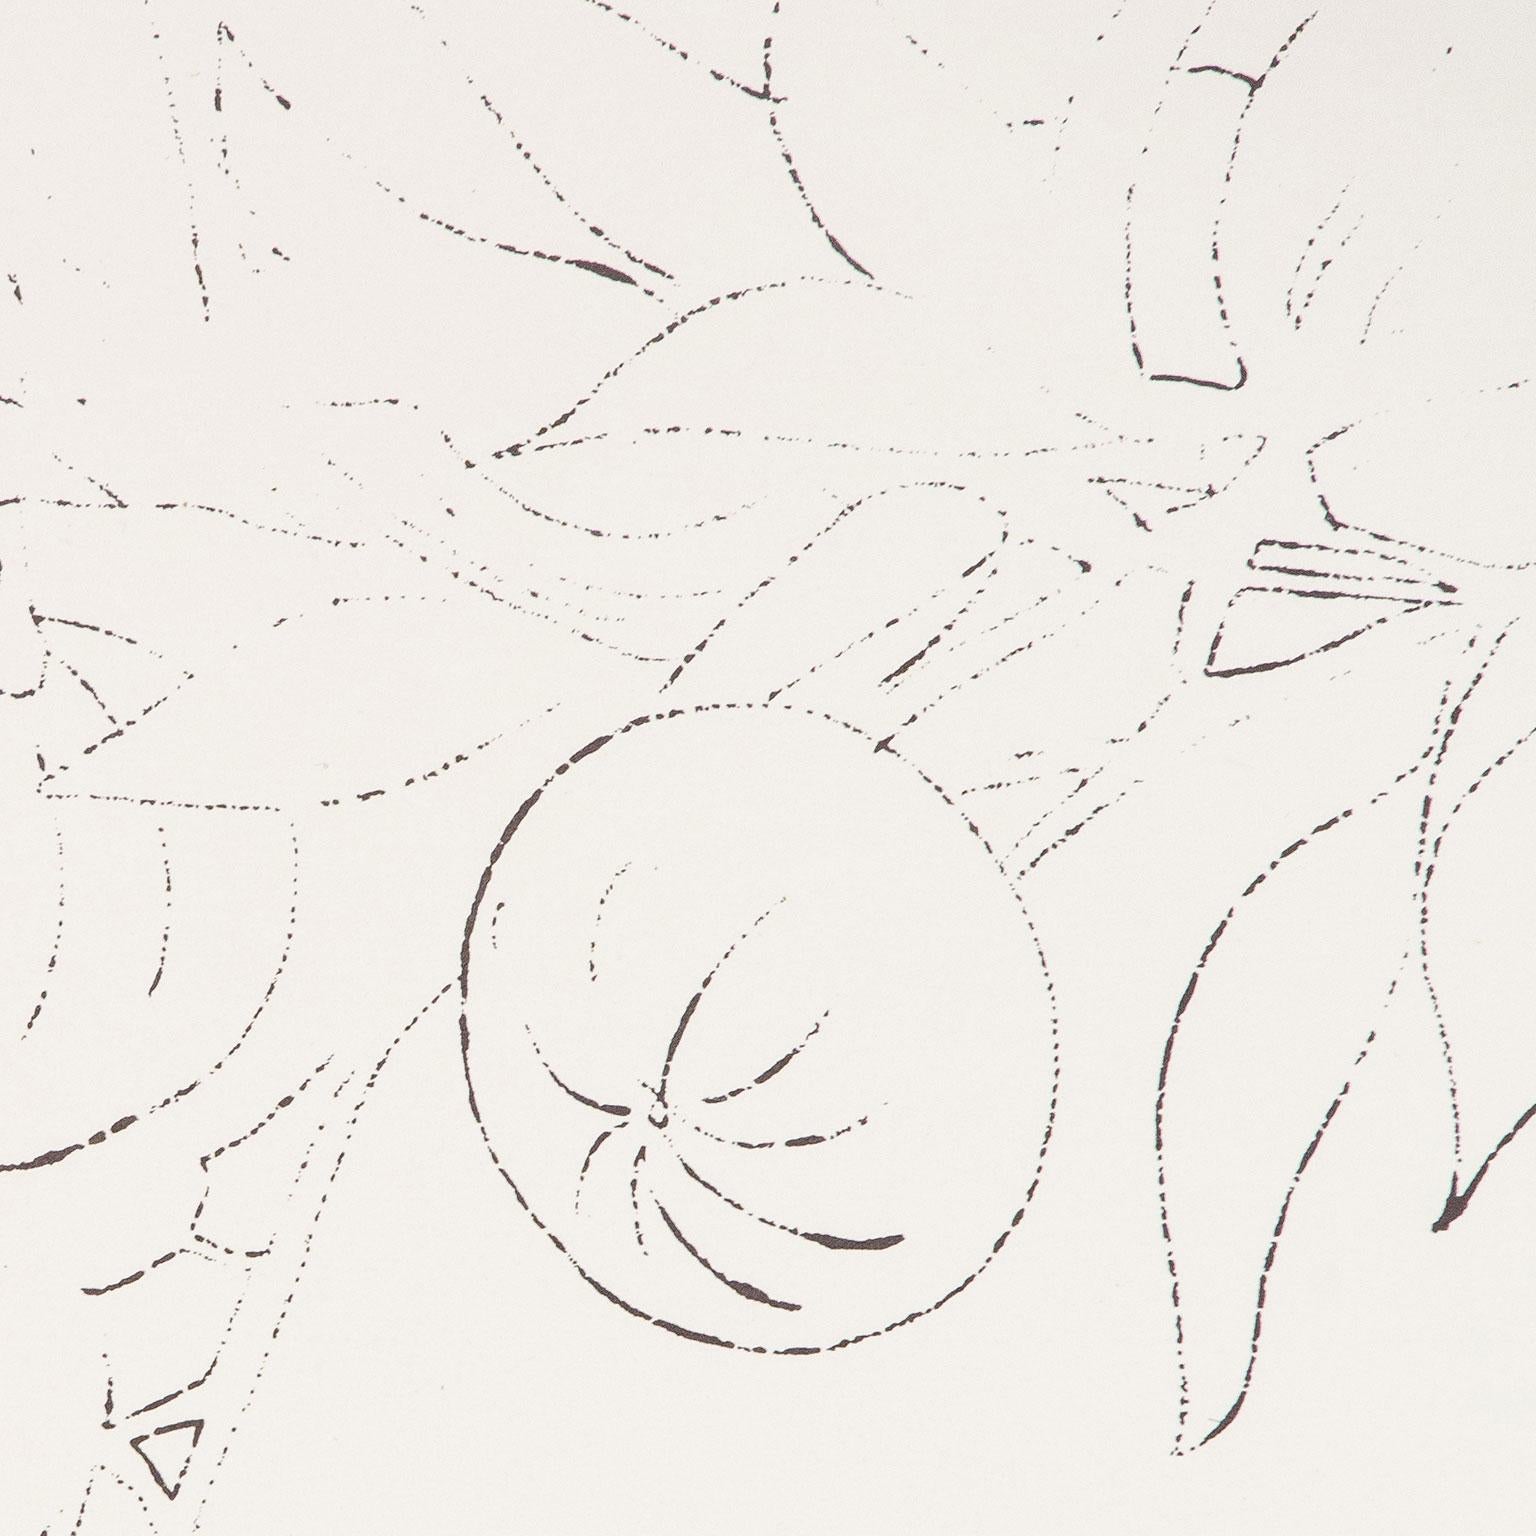 Oiseau sur une branche de fruits, lithographie offset colorée à la main à l'aquarelle 4